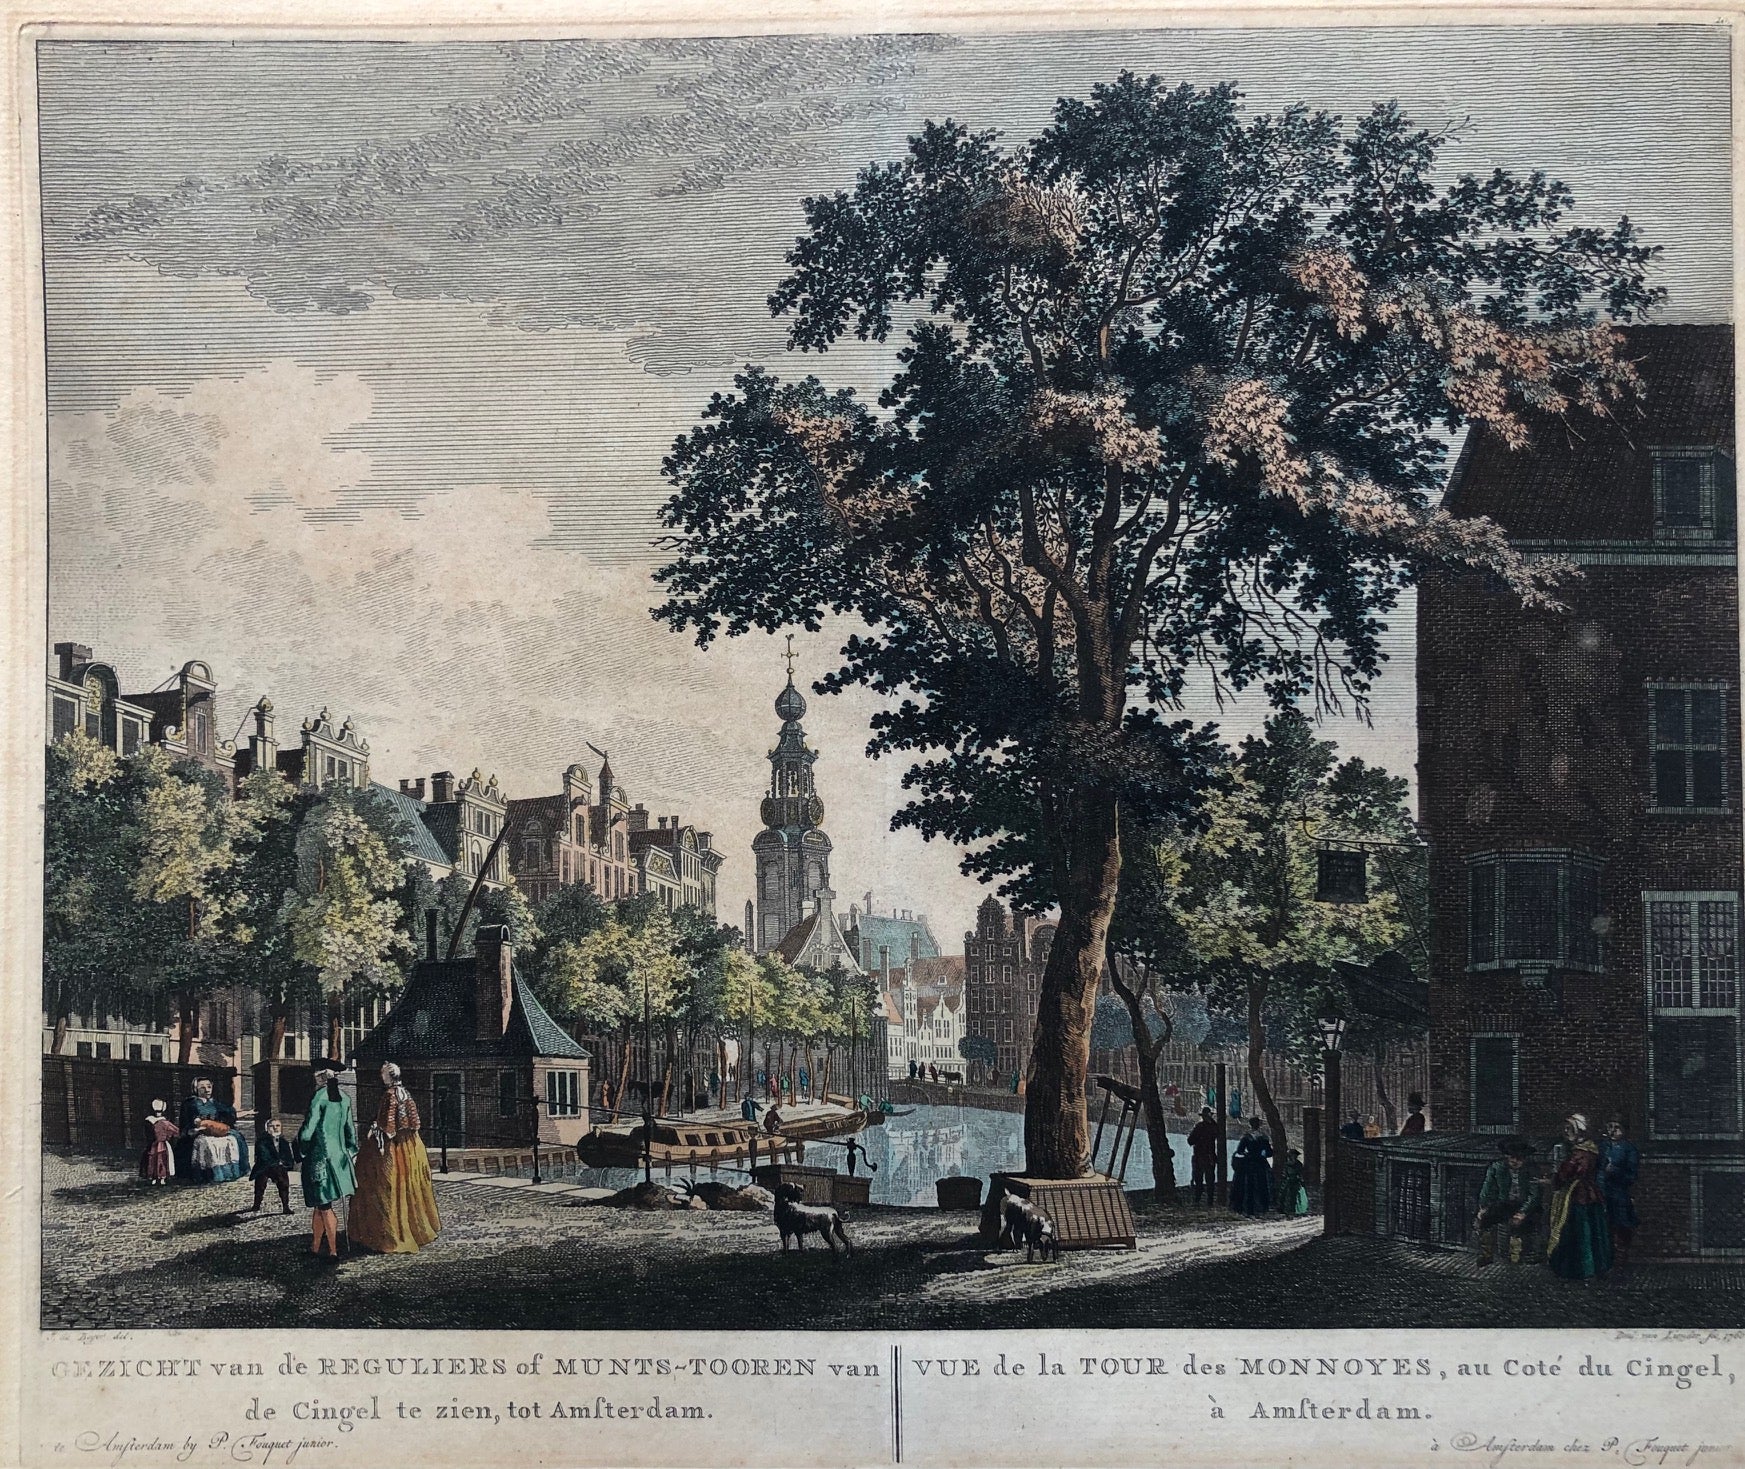 Amsterdam, munt, regulierstoren, munttoren, singel, fouquet, beyer, liender, antique print, old print, engraving, canal, colour.